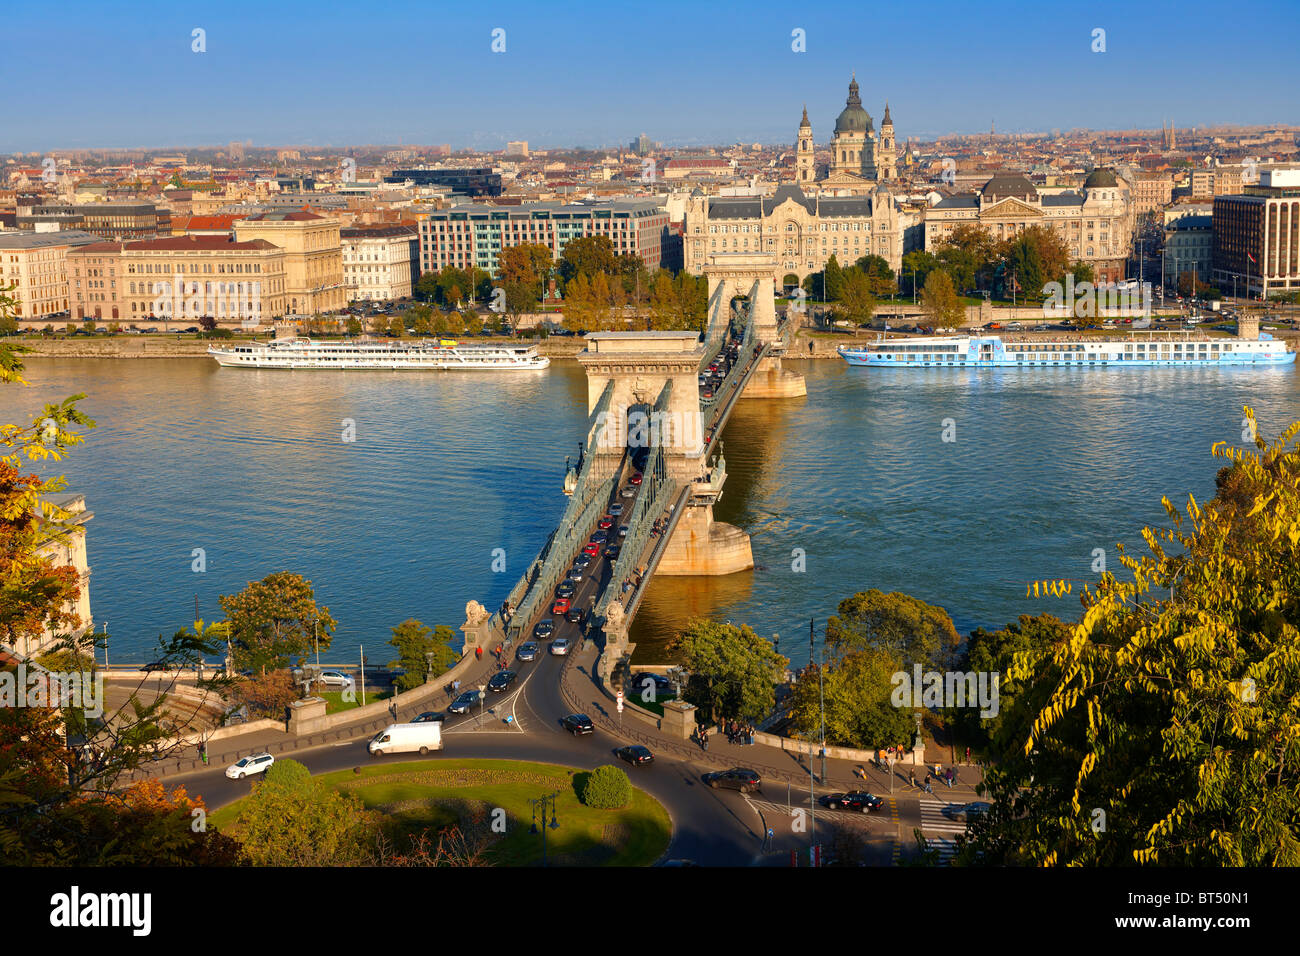 Ver a través del Danubio de Pest desde la colina del castillo de Buda, con el puente de la cadena Szecheni ( Lanchid ). Budapest, Hungría Foto de stock